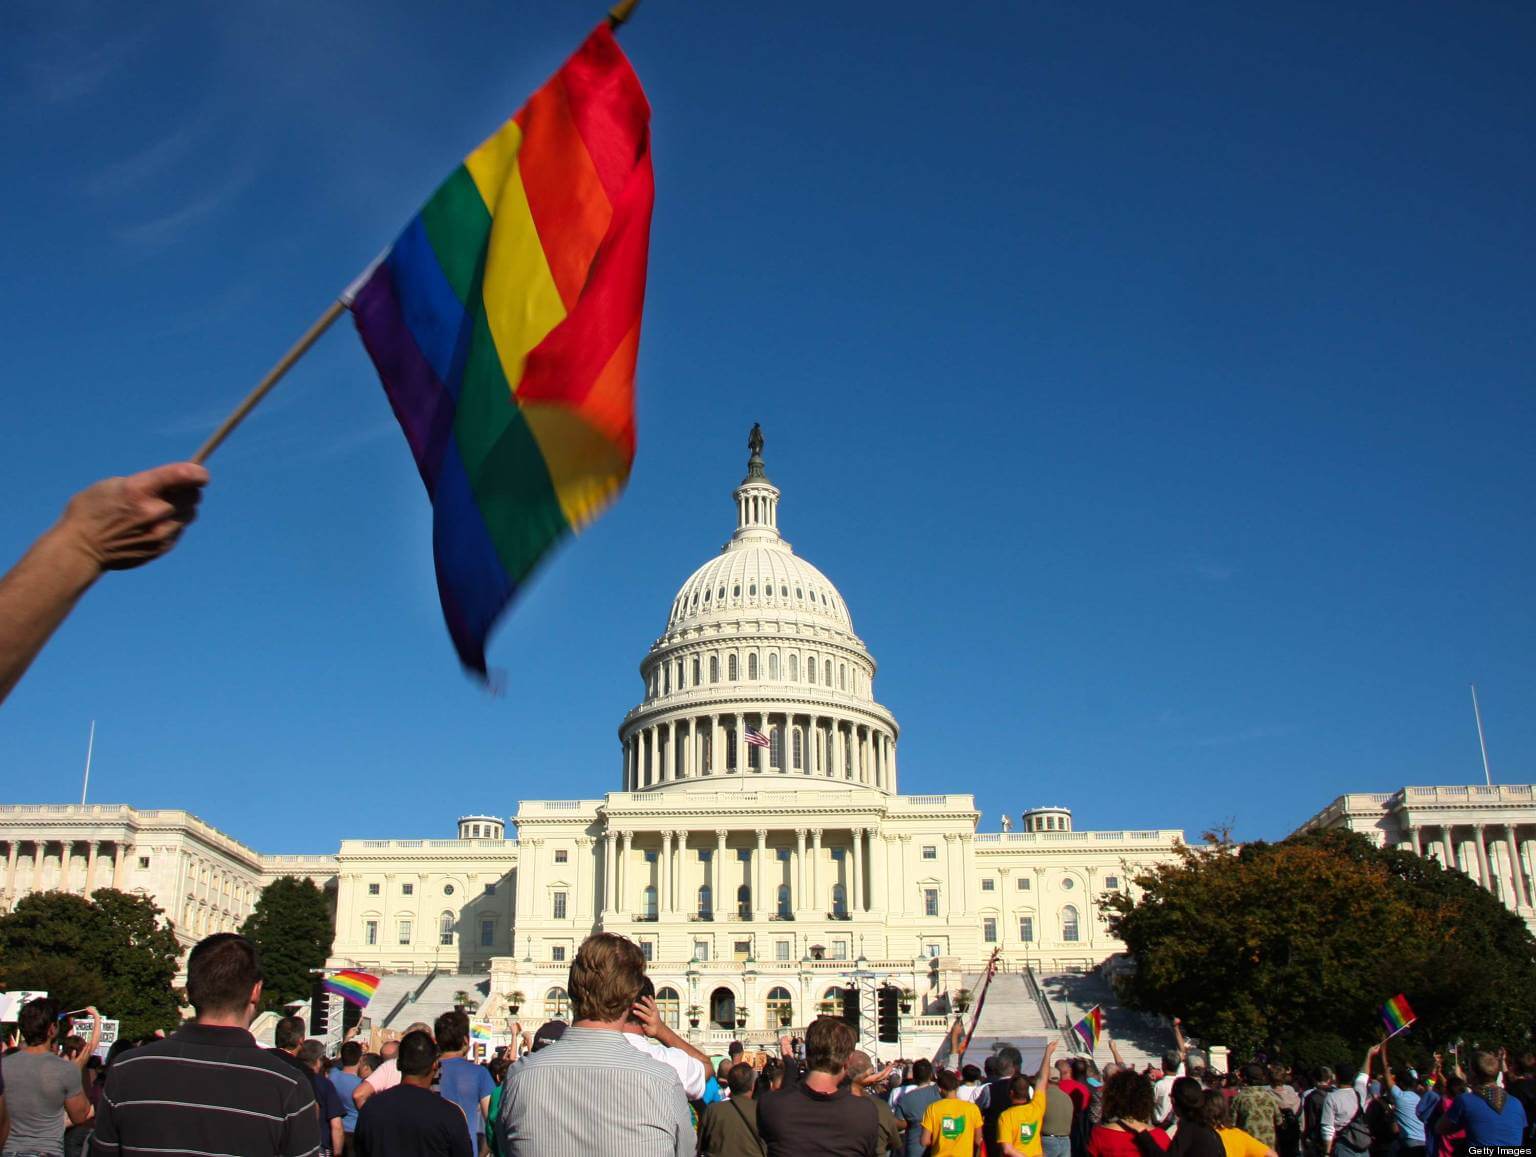 Sai quanti Stati hanno approvato i matrimoni gay negli USA nel 2014?